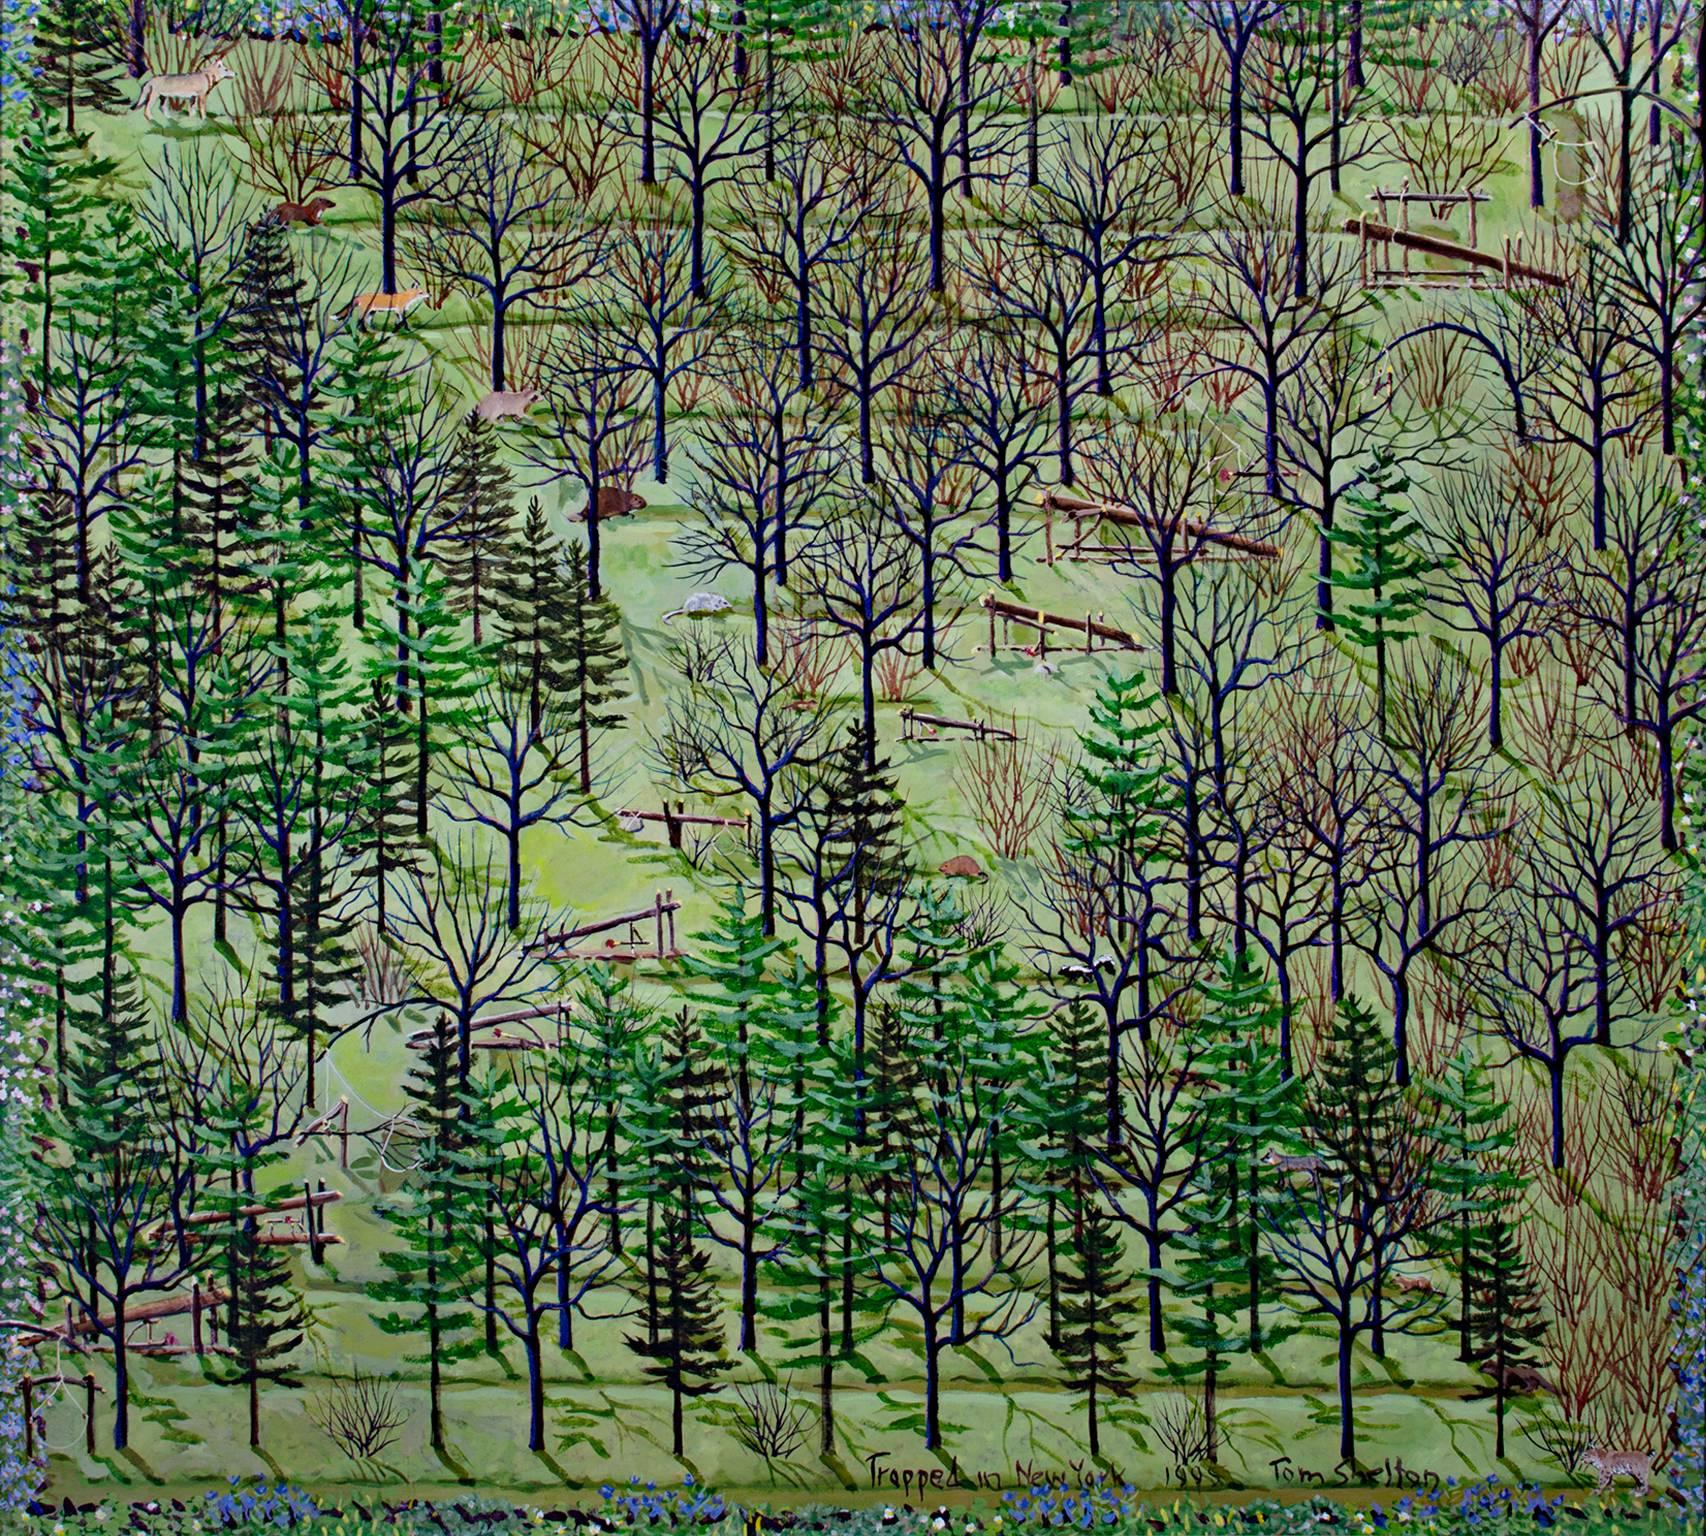 "Gefangen in New York" ist ein Original-Acrylgemälde von Tom Shelton. Der Künstler hat das Werk unten rechts signiert, betitelt und datiert. Dieses Stück zeigt einen Wald mit Tieren und hölzernen Fallen, die eine "X"-förmige Lichtung